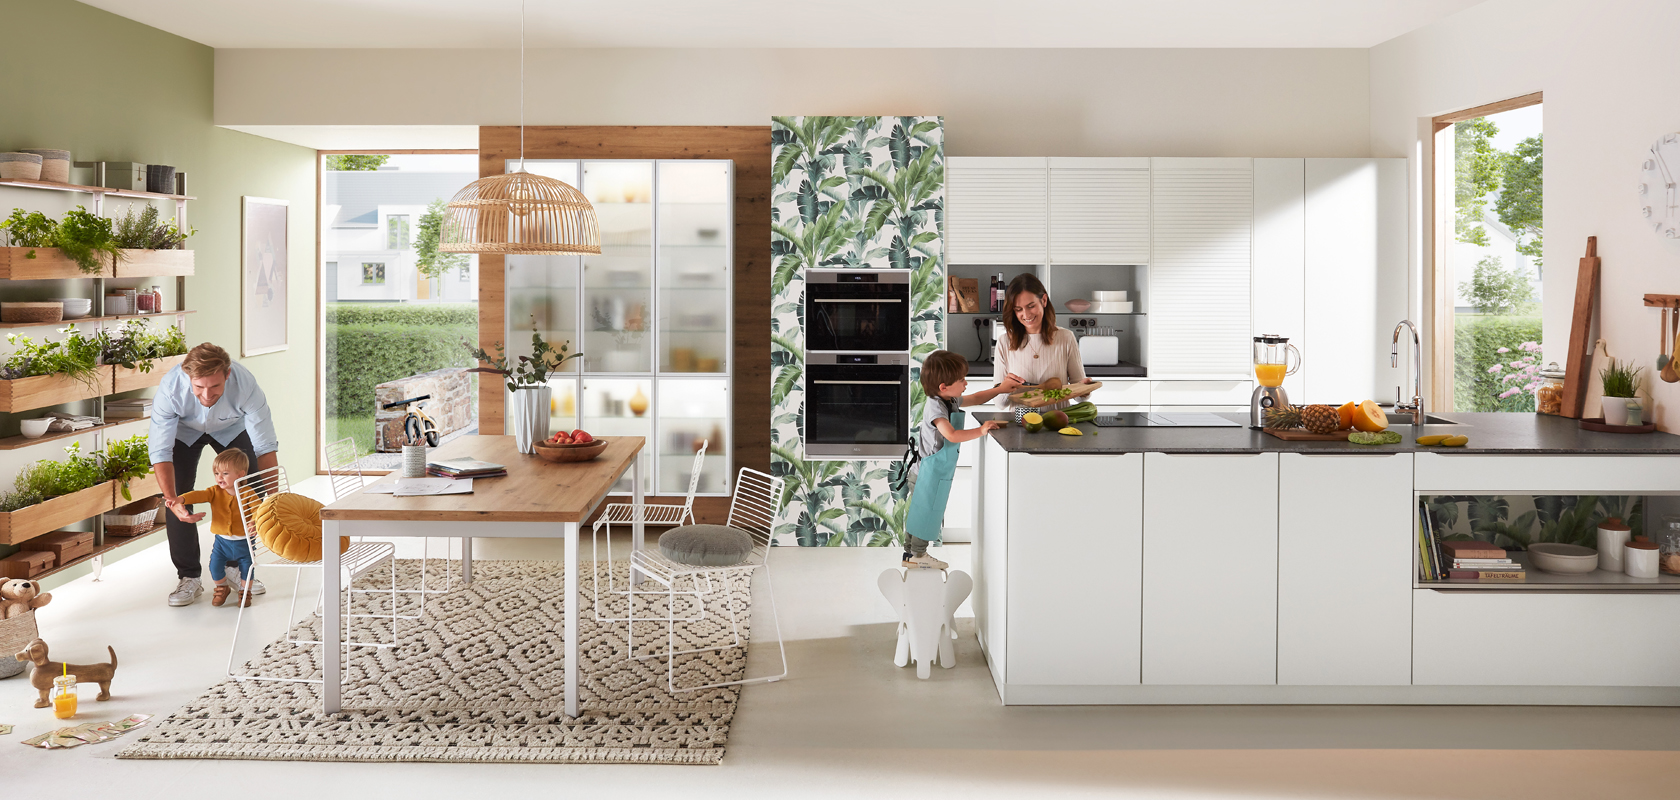 Moderne Küchenszene mit einer Familie; eine Person kocht, ein Kind spielt mit einem Hund und eine andere Person arbeitet an einem Tisch und zeigt eine lebhafte Wohnumgebung.